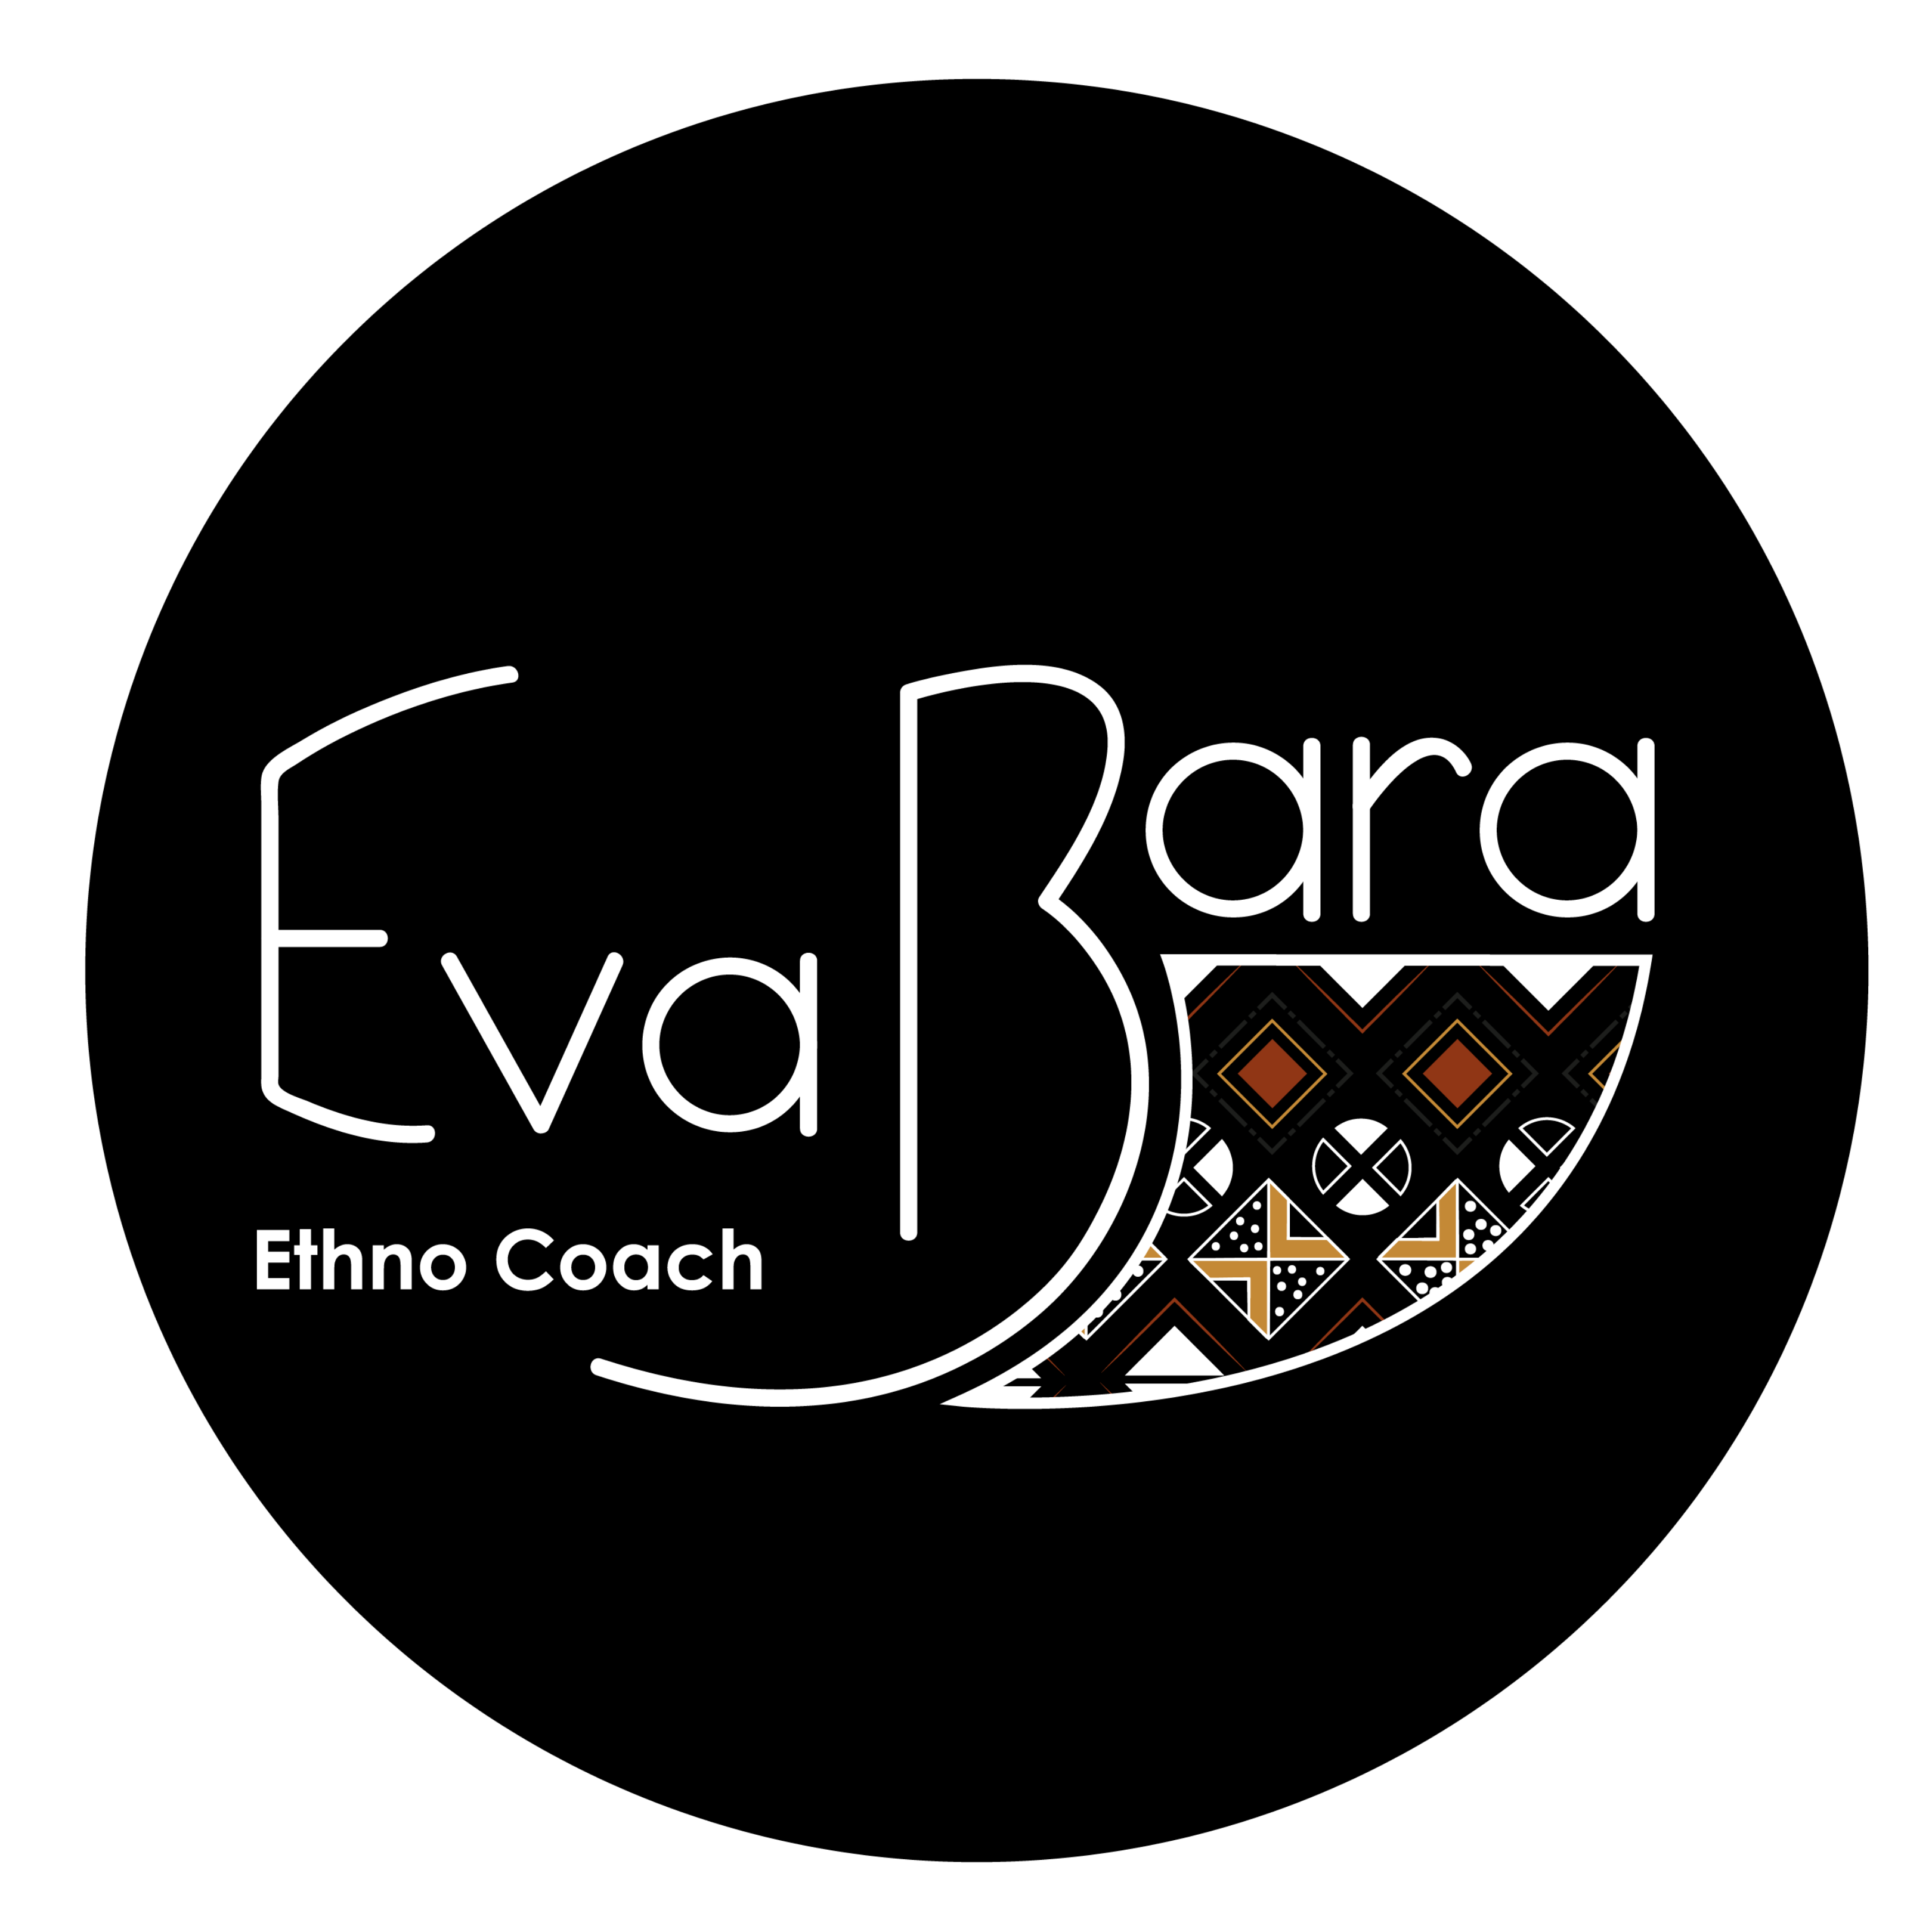 Eva Bara